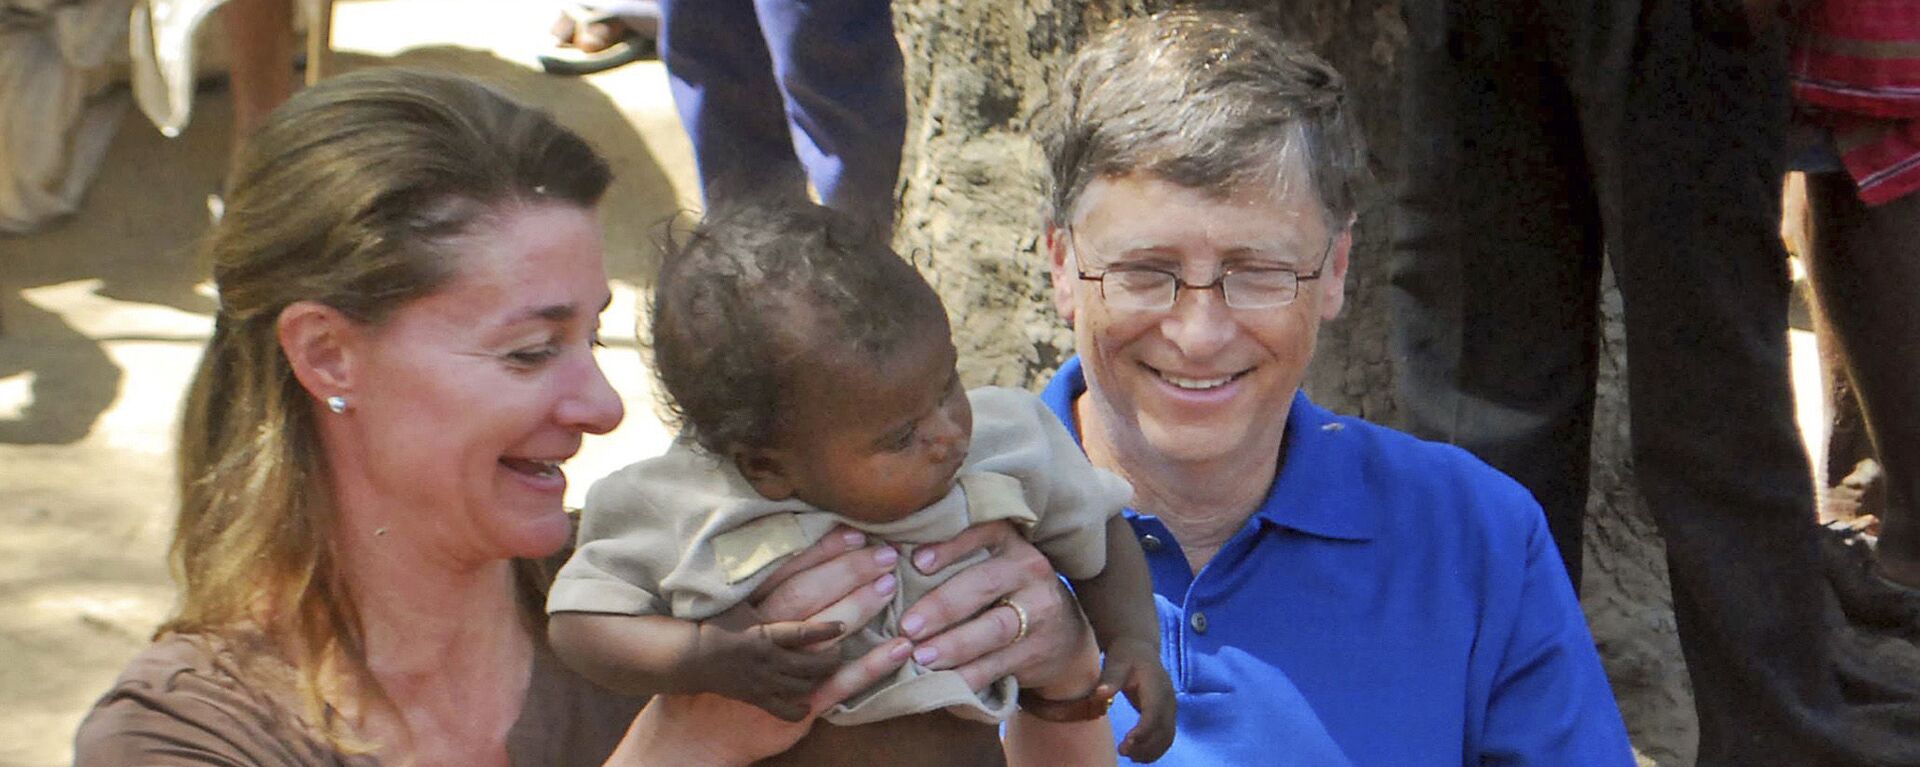 Билл Гейтс с супругой Мелиндой в Индии, 2011 год - Sputnik Латвия, 1920, 05.05.2021